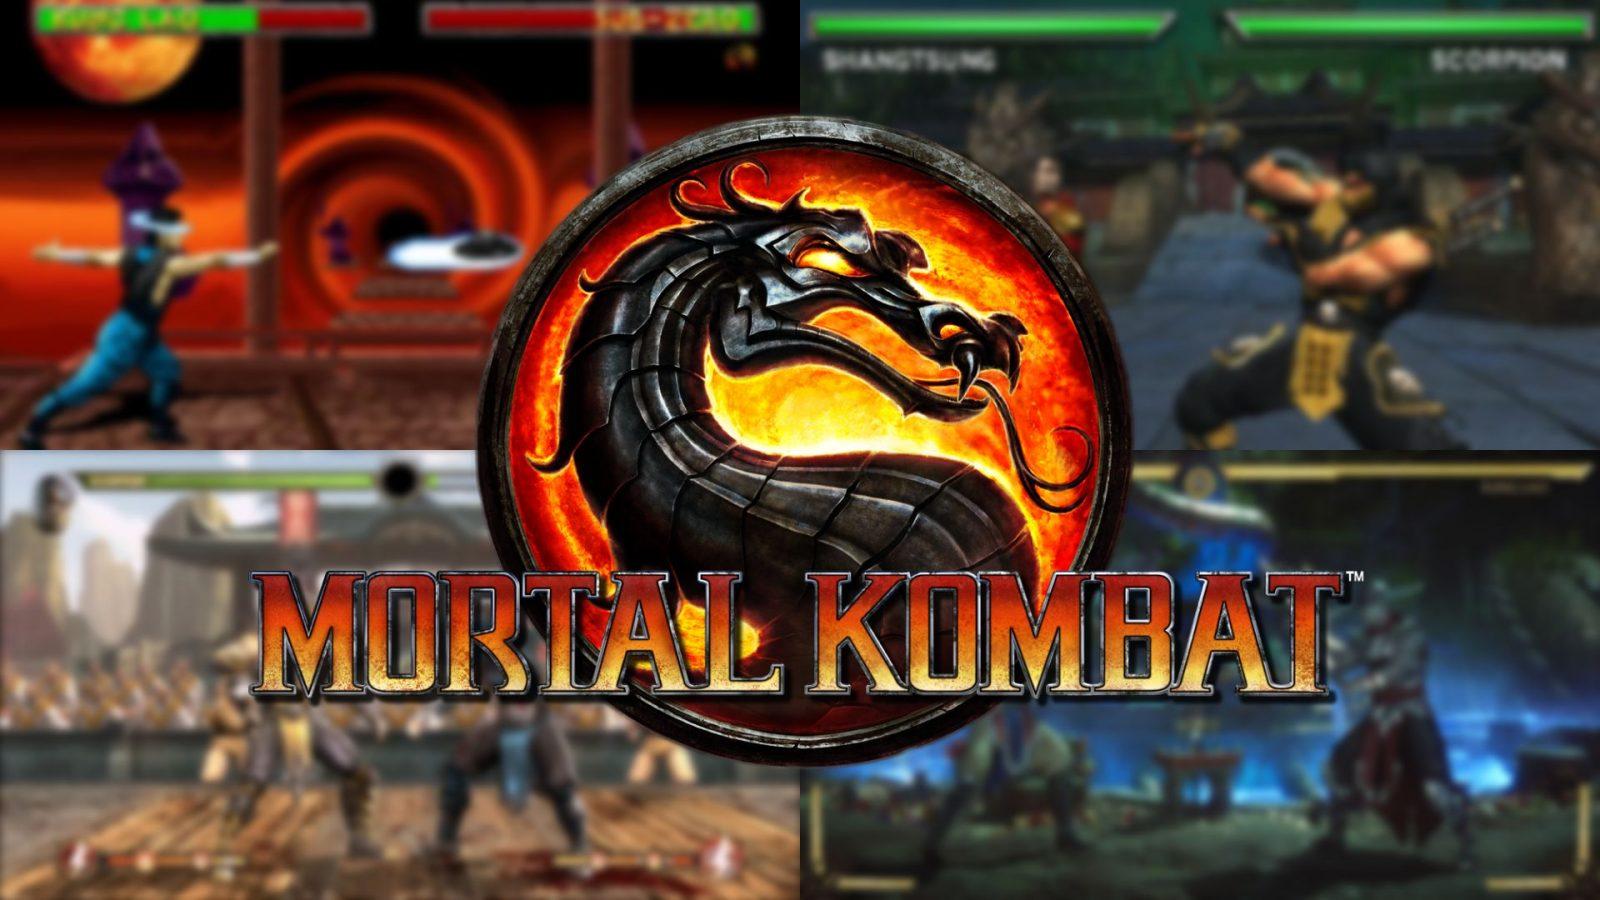 mortal kombat, games, pc games, xbox games, ps games HD Wallpaper